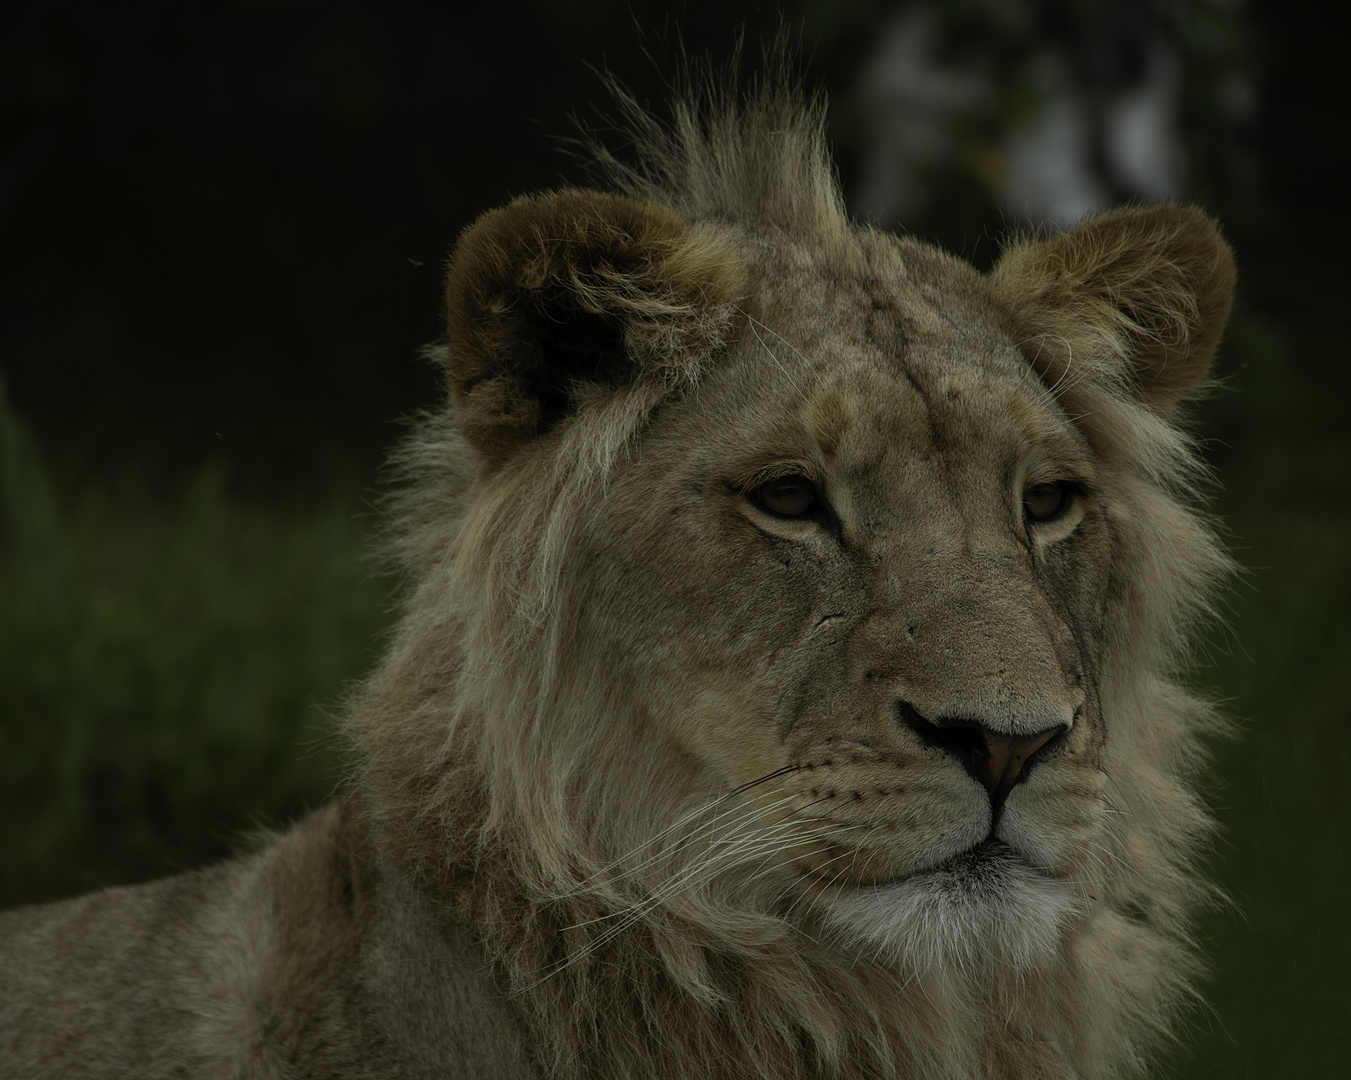 Adolescent à crête 2 (Panthera leo leo, lion d'Afrique)